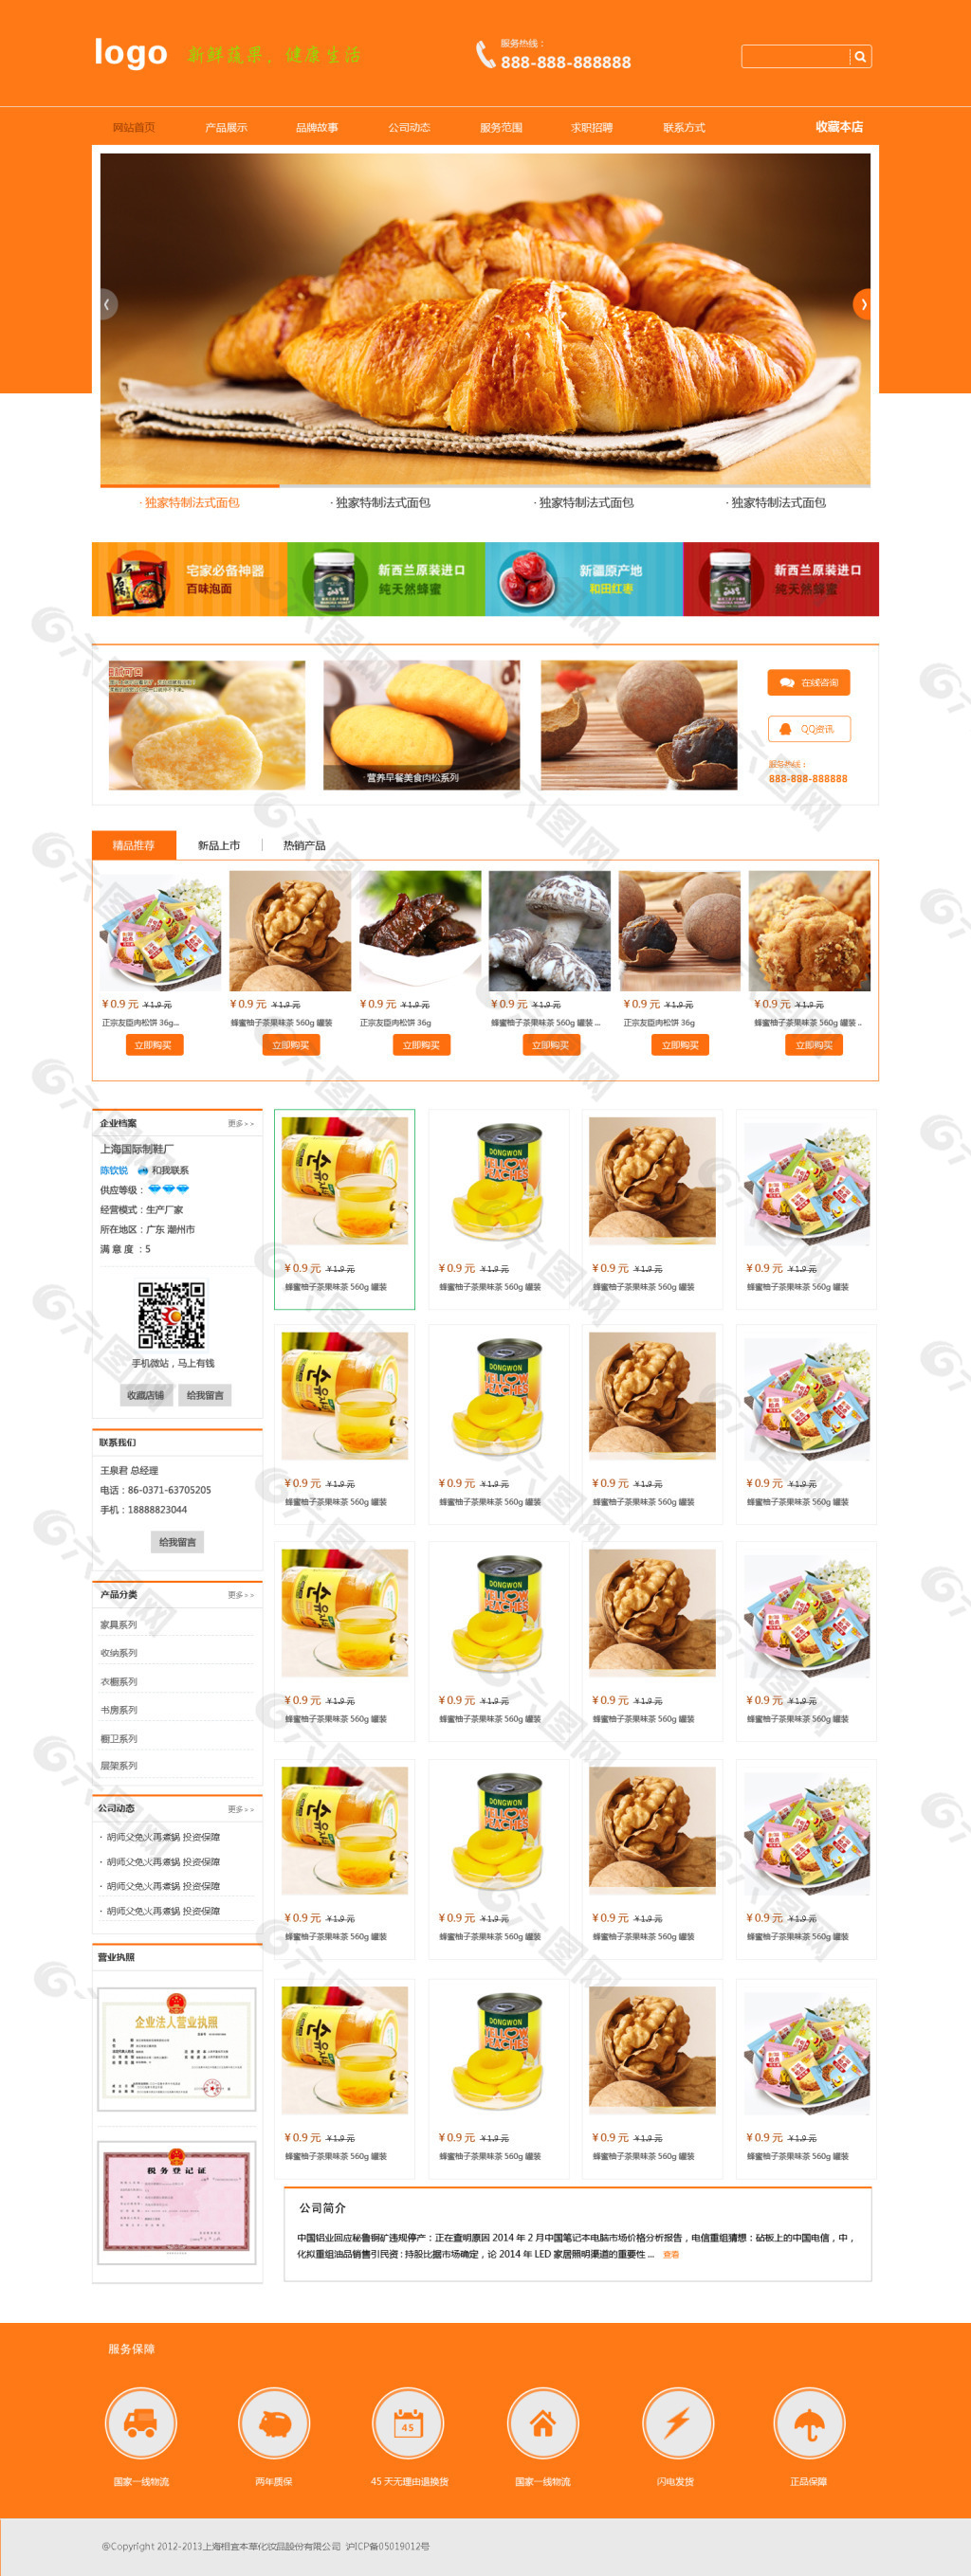 食品类网页设计